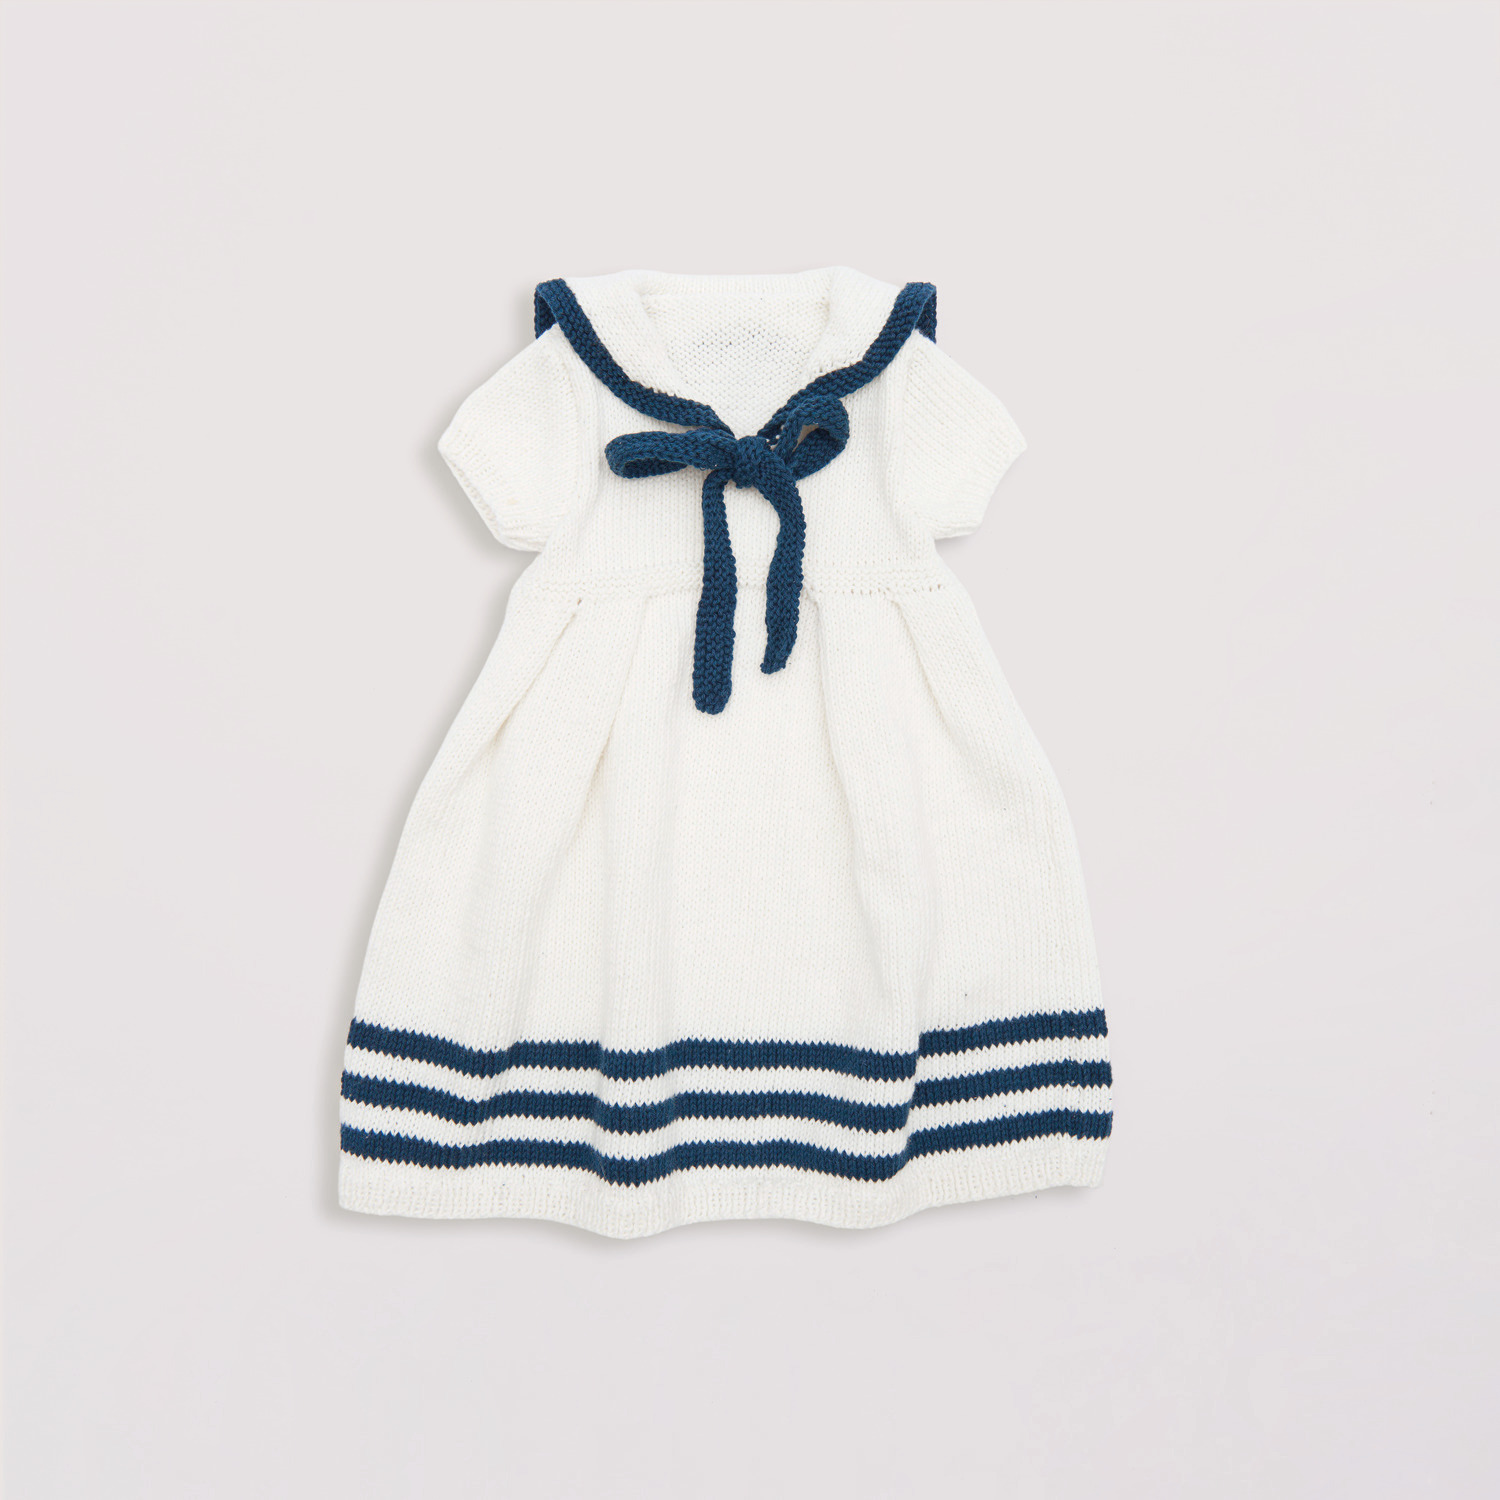 Strickset Kleid Modell 05 aus Baby Nr. 39